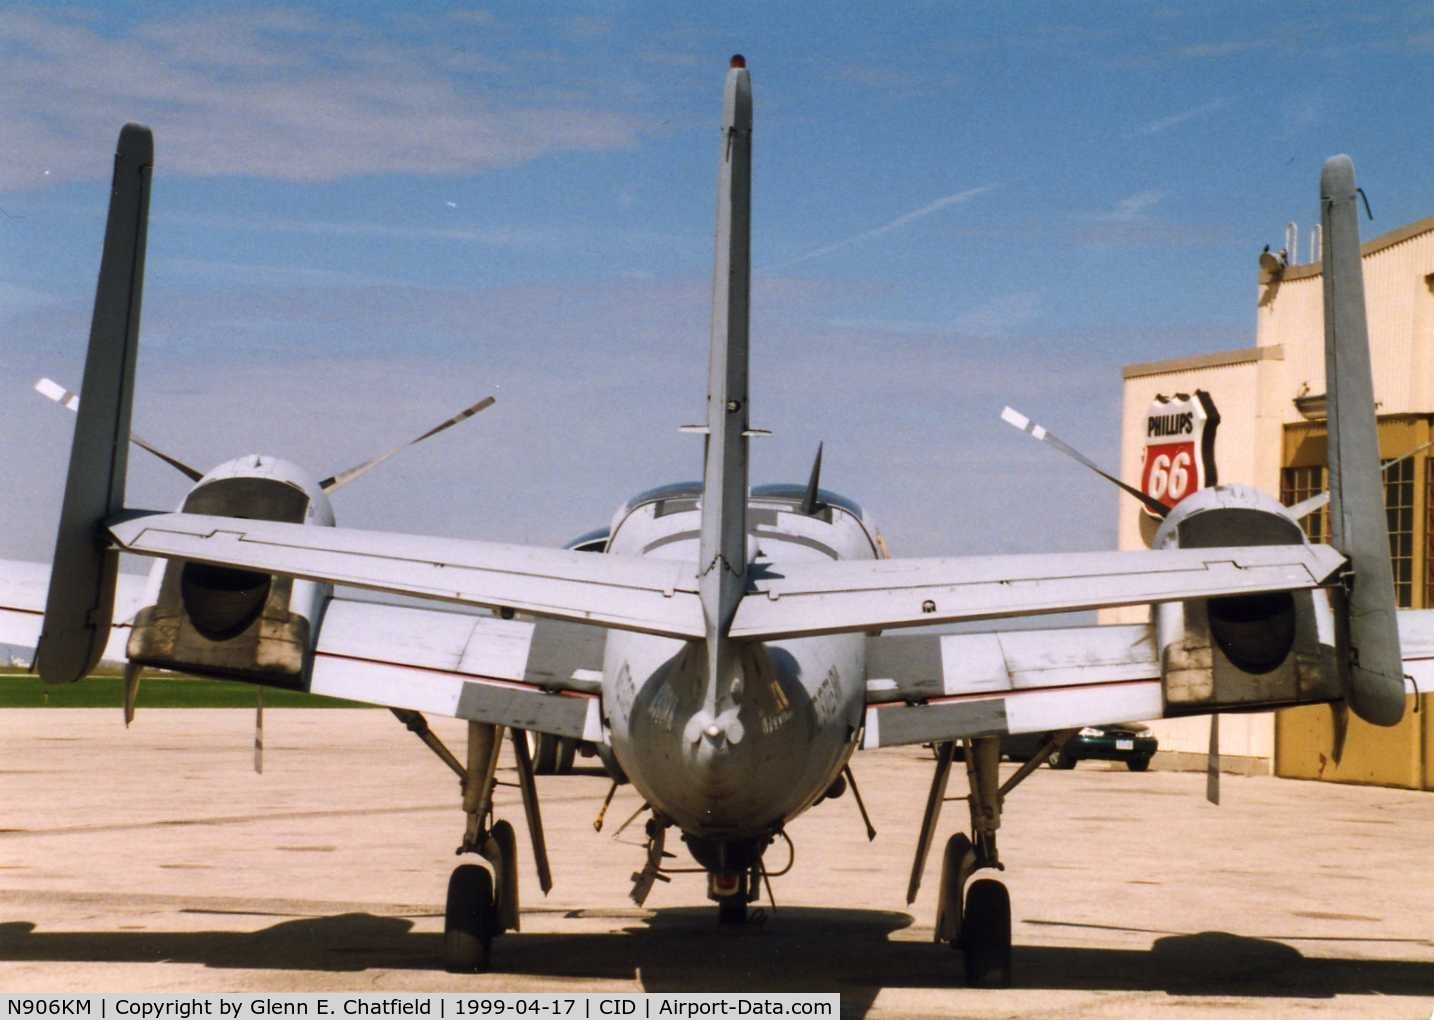 N906KM, 1967 Grumman OV-1C Mohawk C/N 900, OV-1D visiting